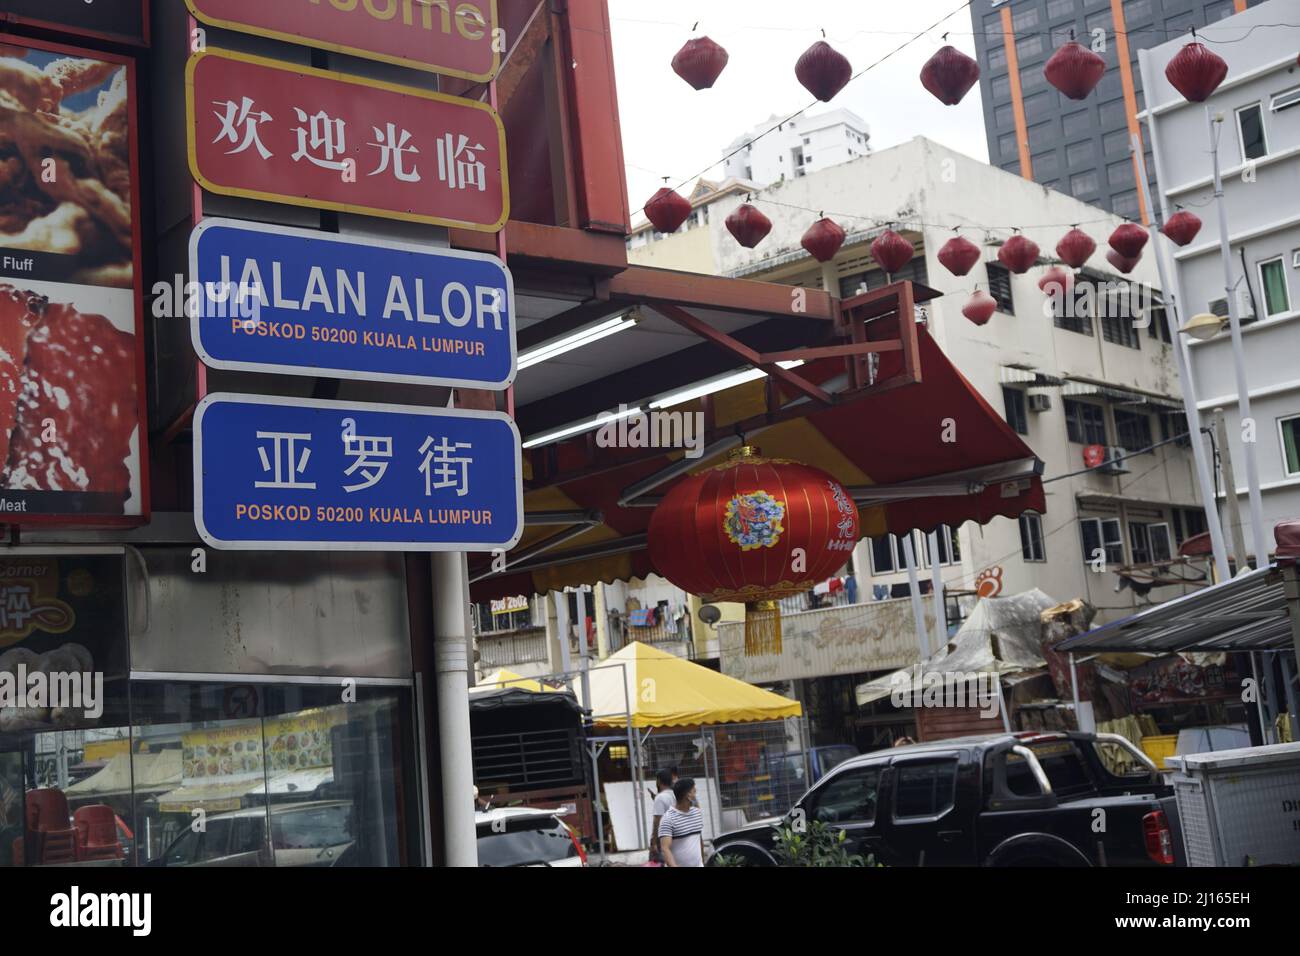 Schild zur Jalan Alor Food Street, Bukit Bintang, Malaysia Stockfoto